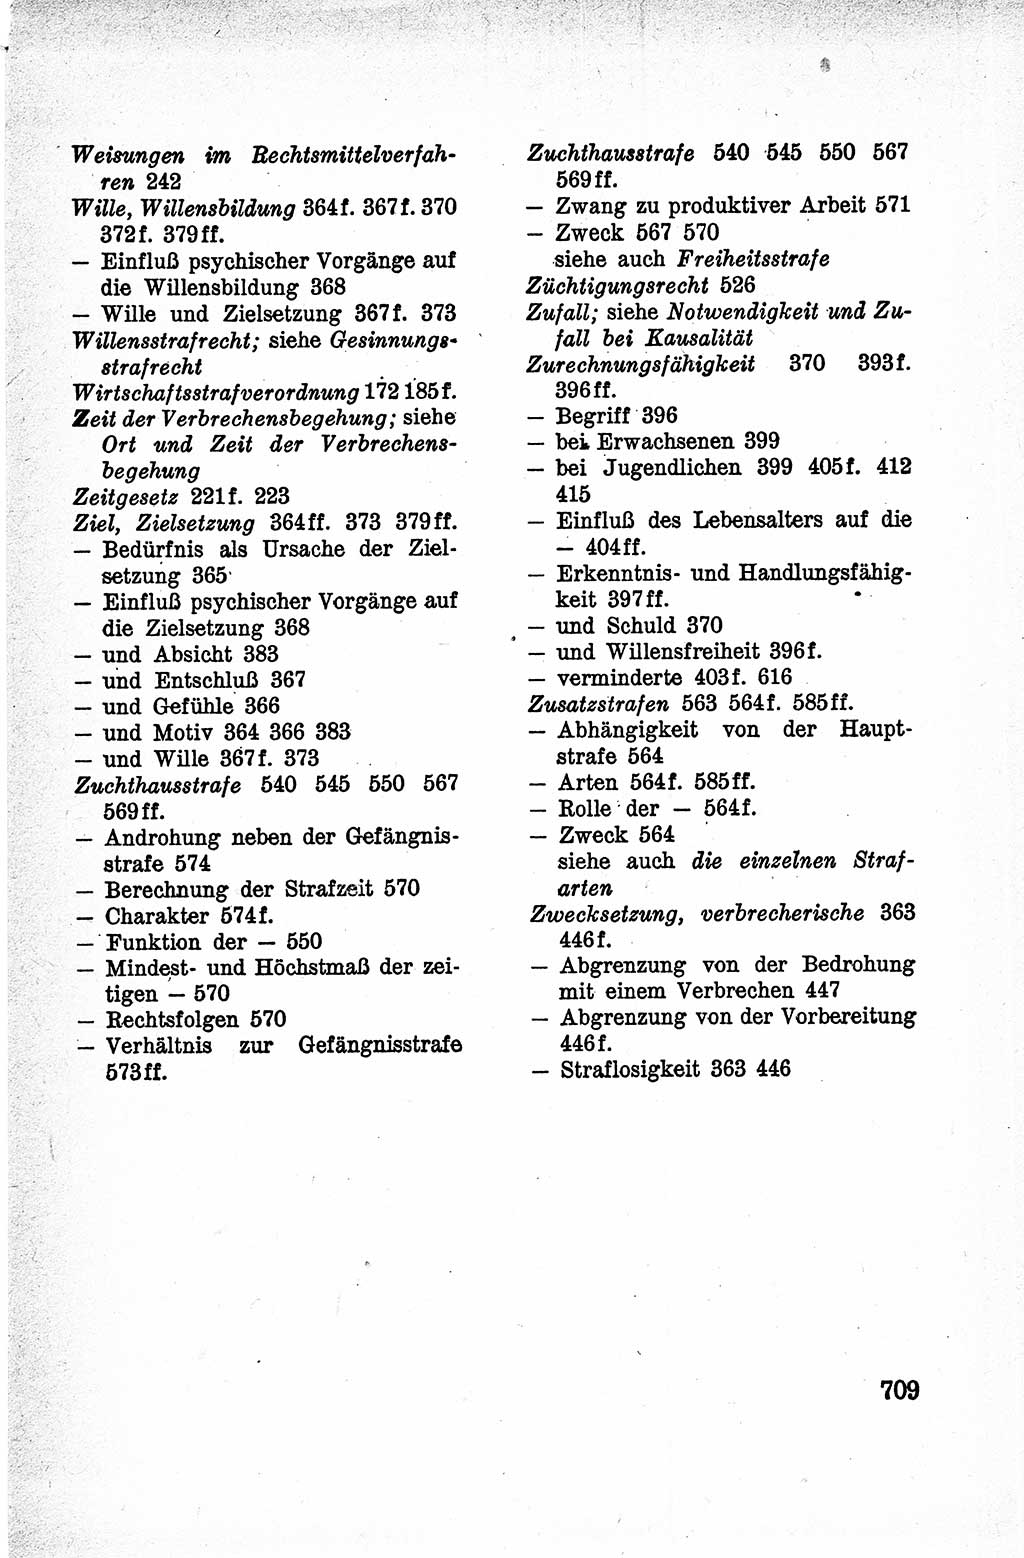 Lehrbuch des Strafrechts der Deutschen Demokratischen Republik (DDR), Allgemeiner Teil 1959, Seite 709 (Lb. Strafr. DDR AT 1959, S. 709)